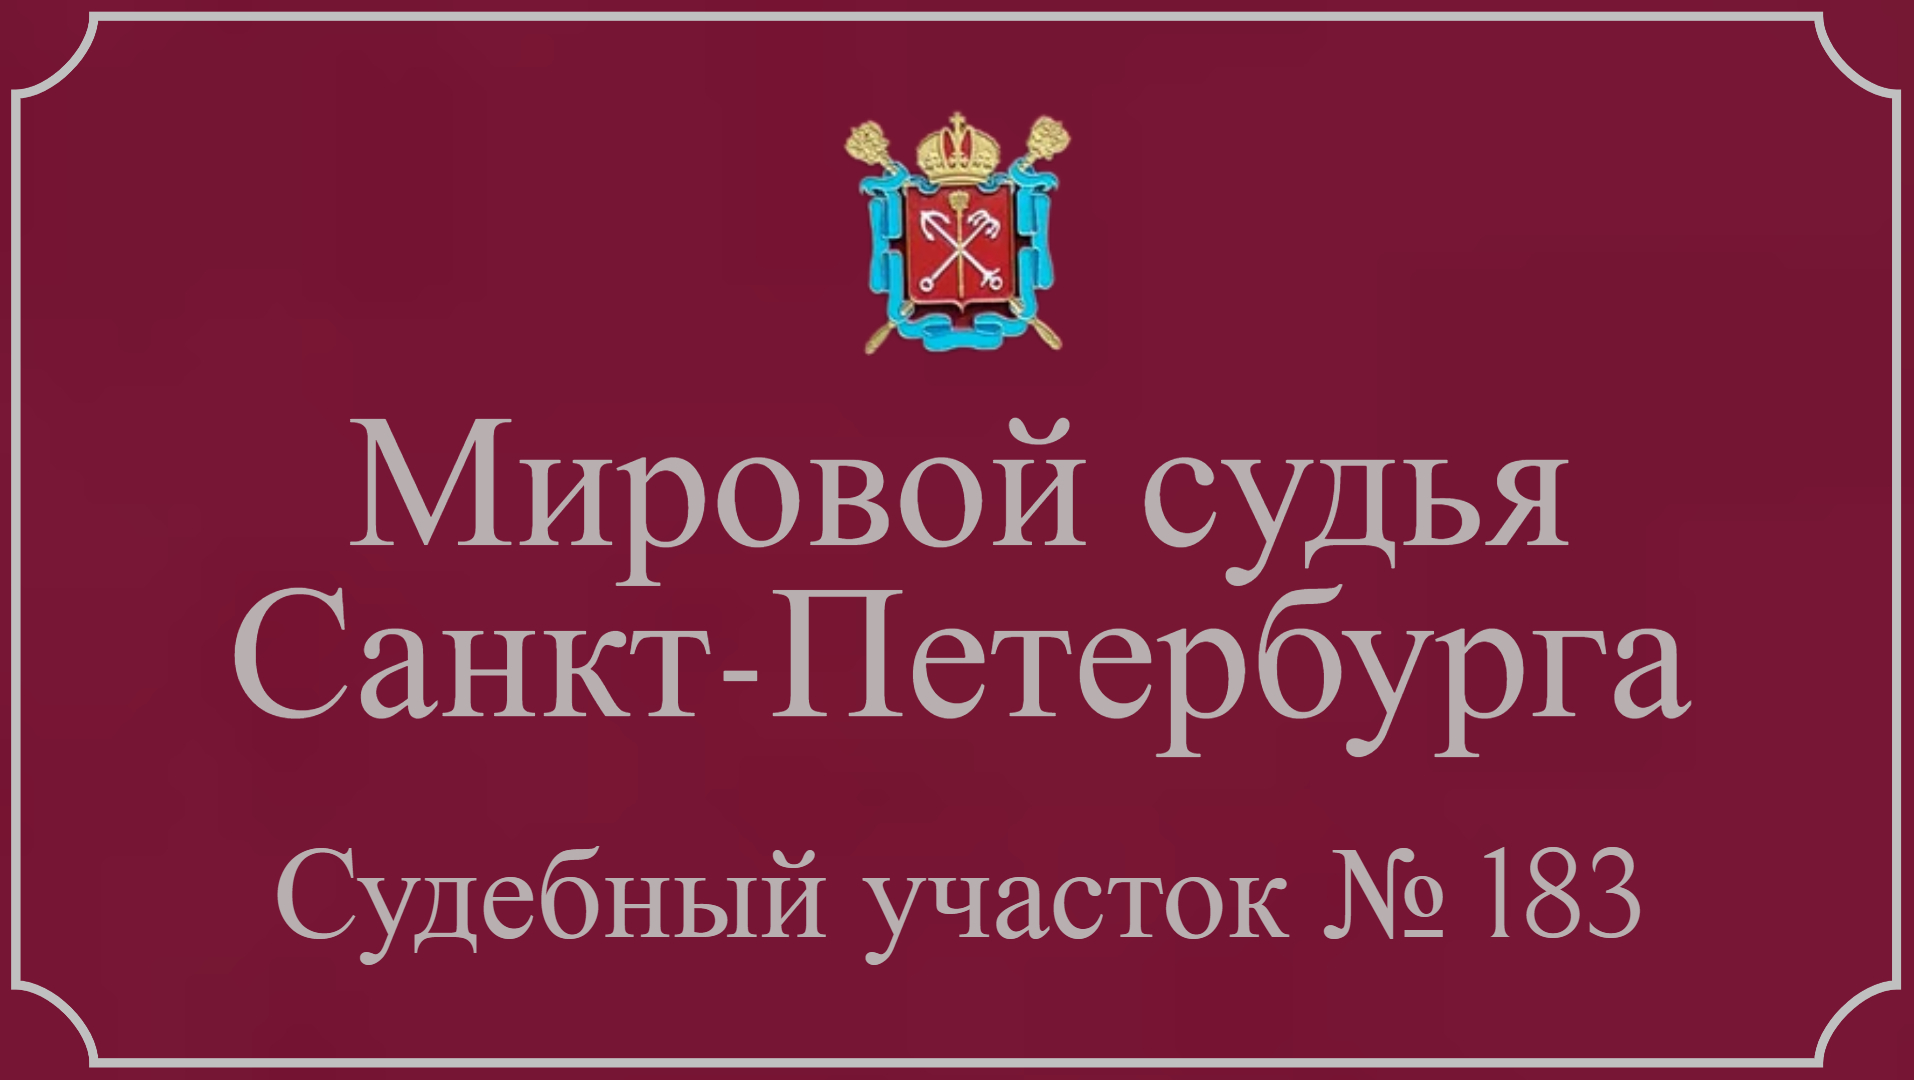 Информация по 183 судебному участку в Санкт-Петербурге.